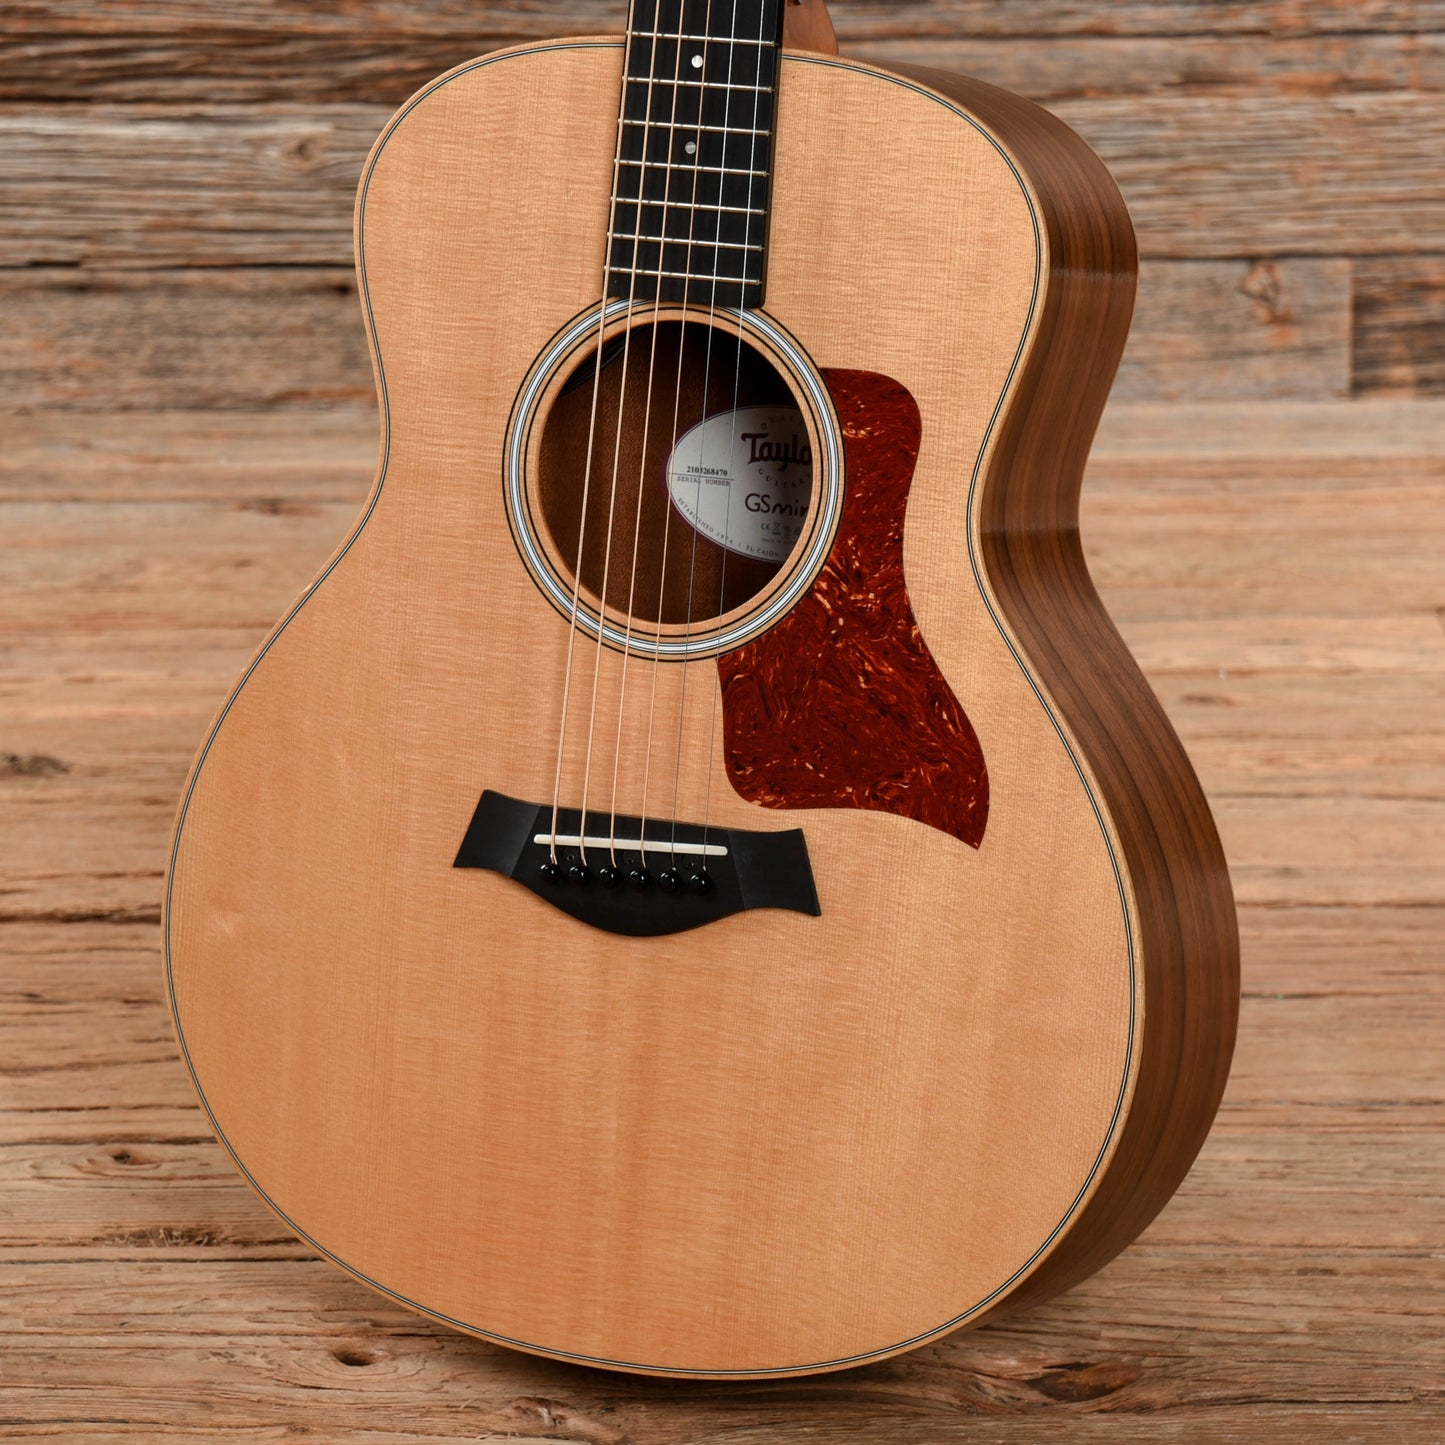 Taylor GS Mini-e Walnut Natural 2018 Acoustic Guitars / Mini/Travel